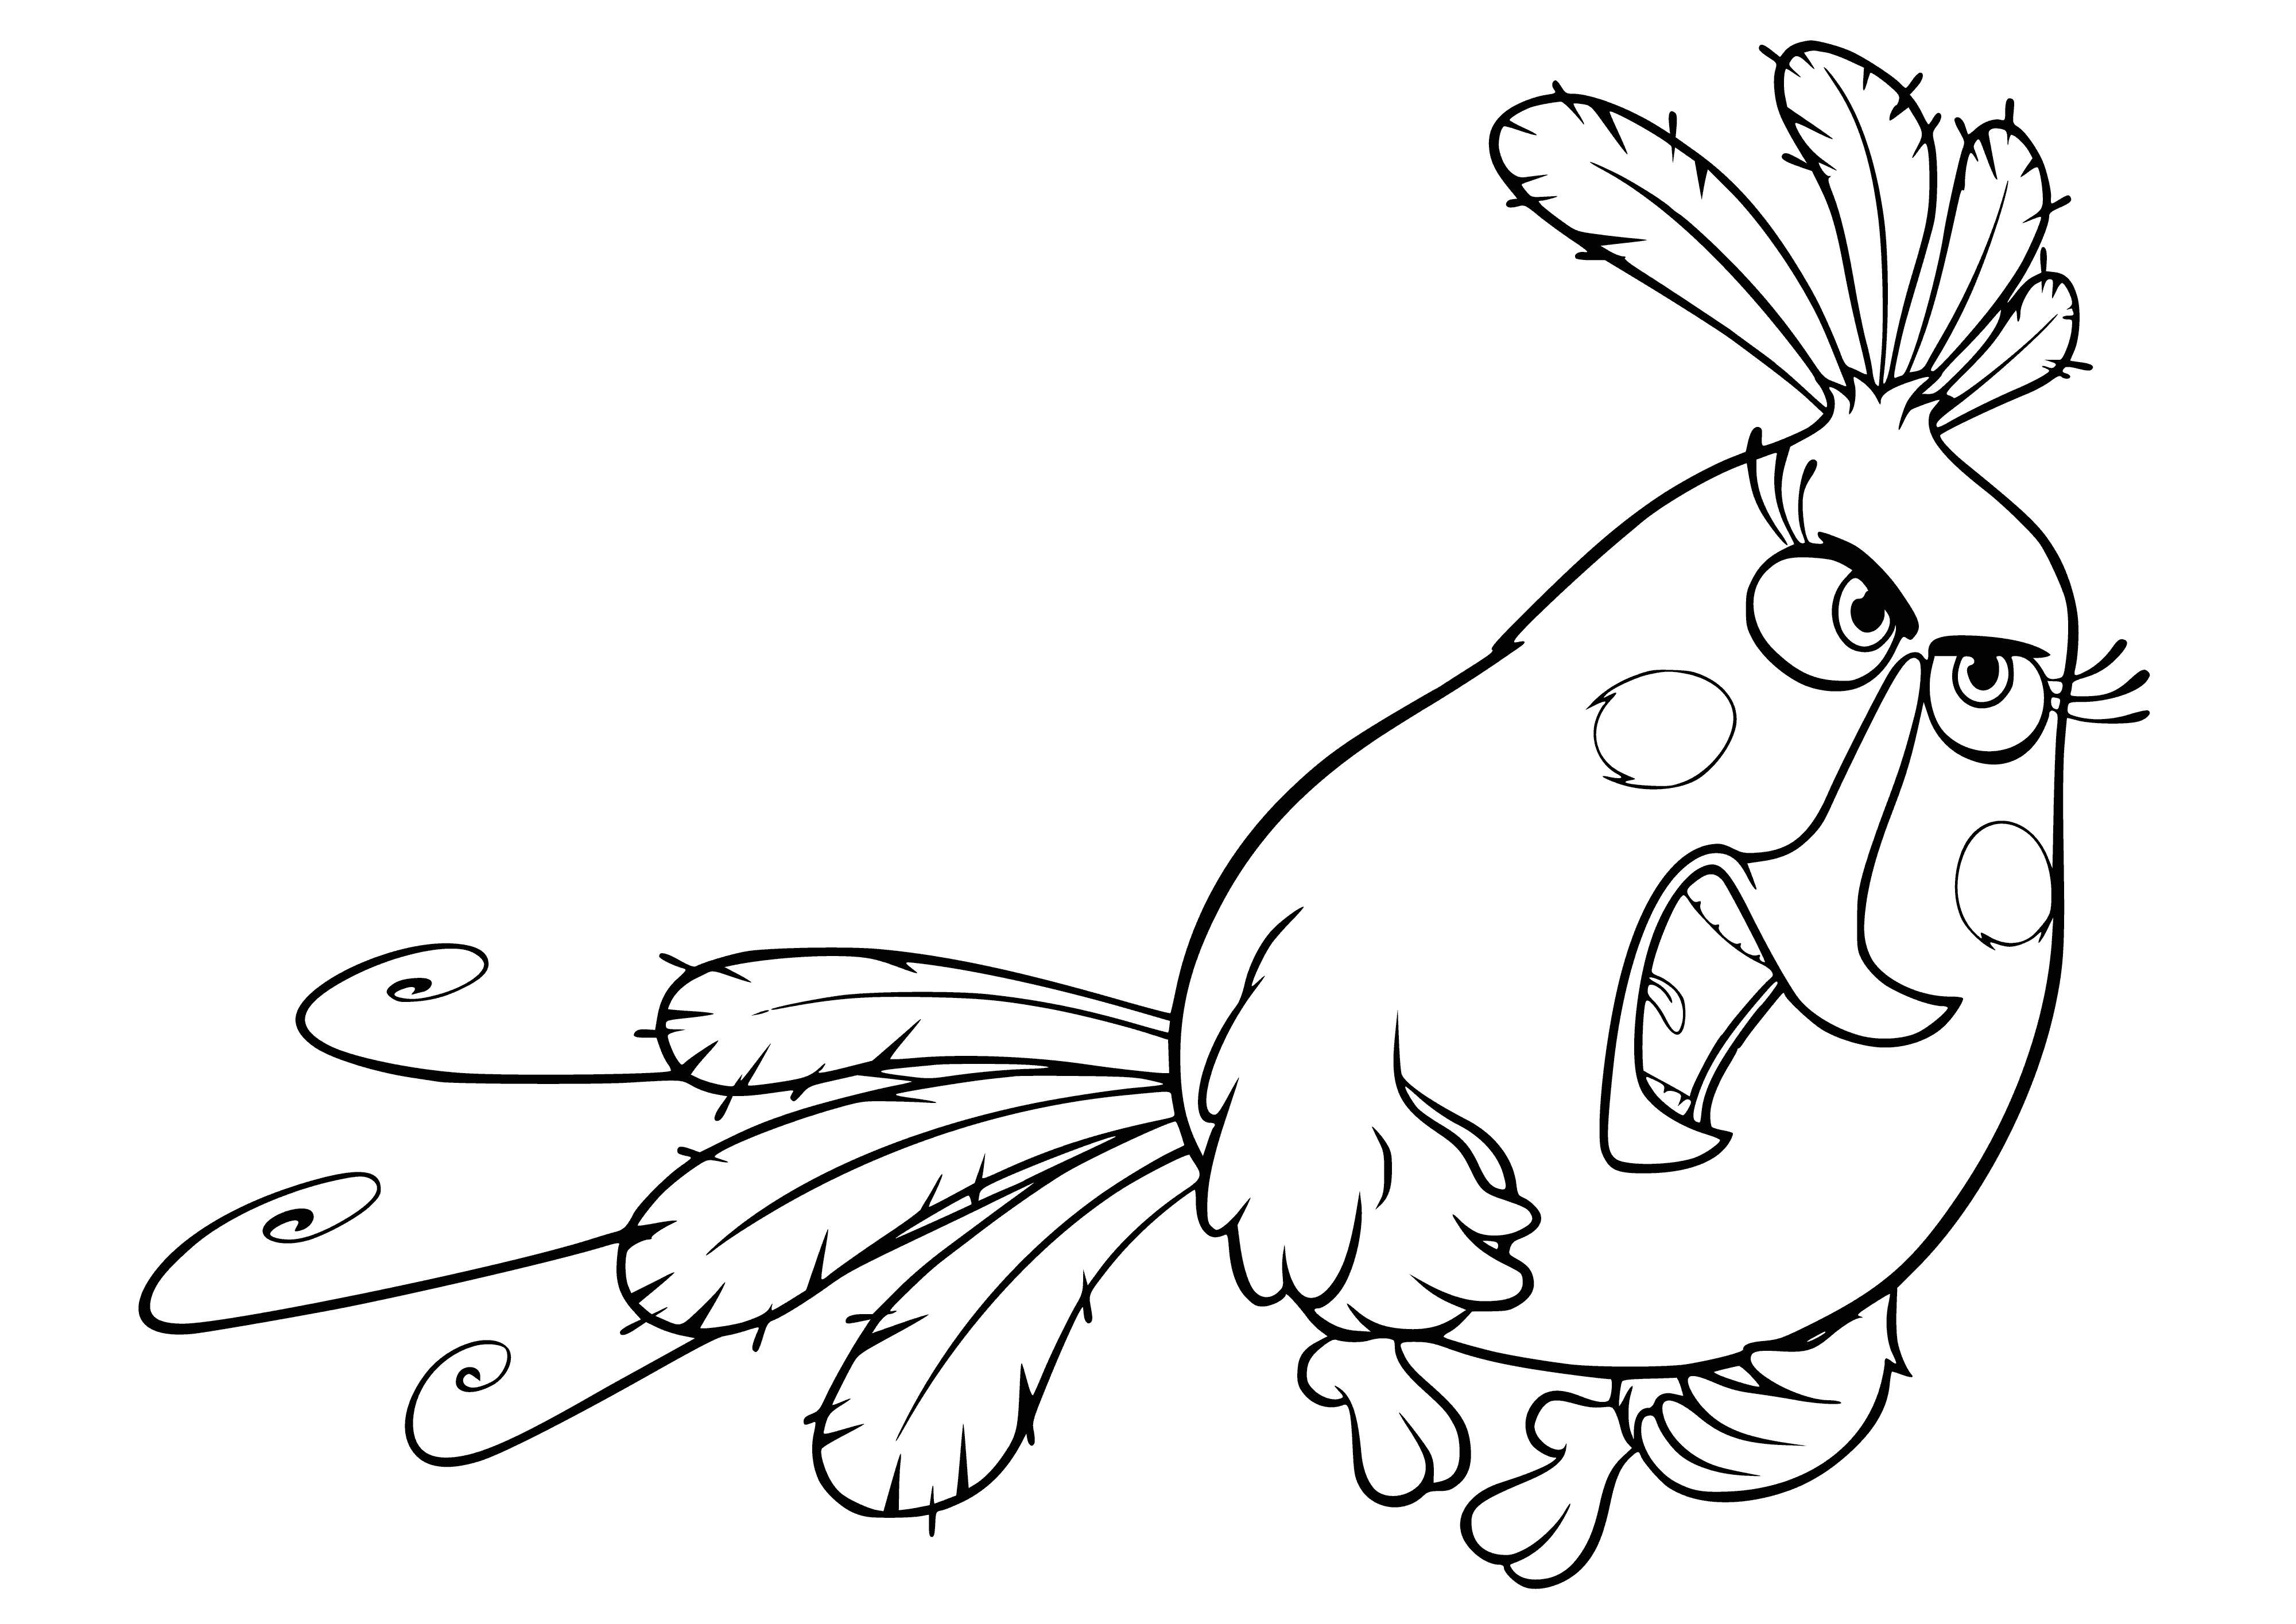 Matilda in flight coloring page